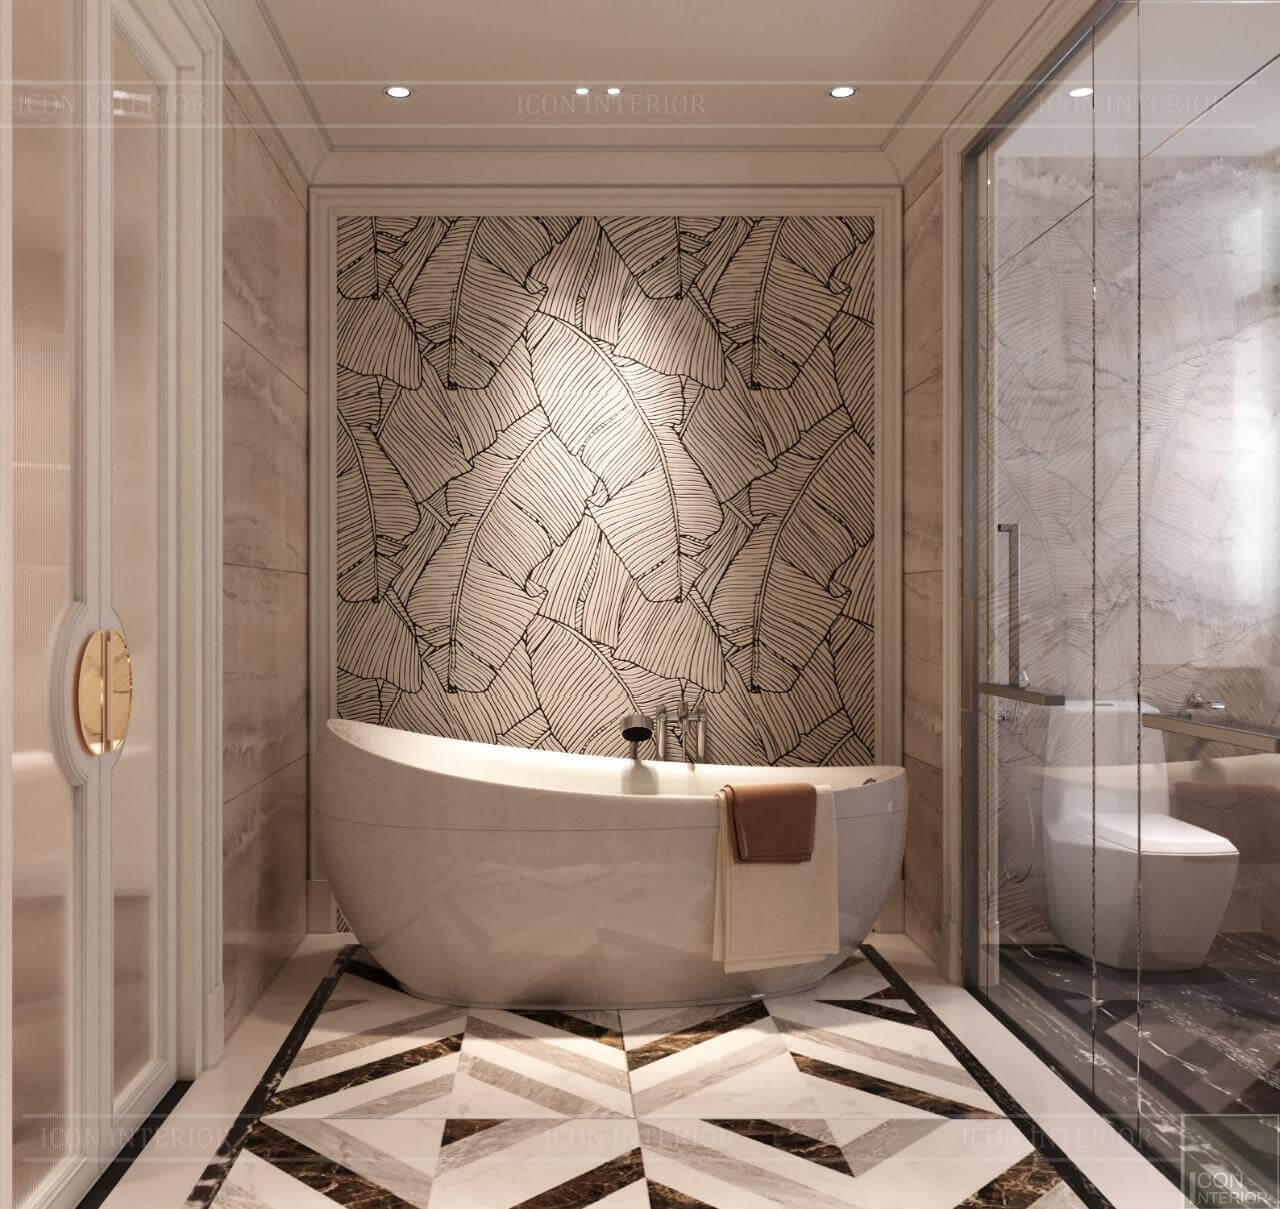 Mẫu thiết kế nhà vệ sinh đẹp hiện đại sang trọng nhất 2019